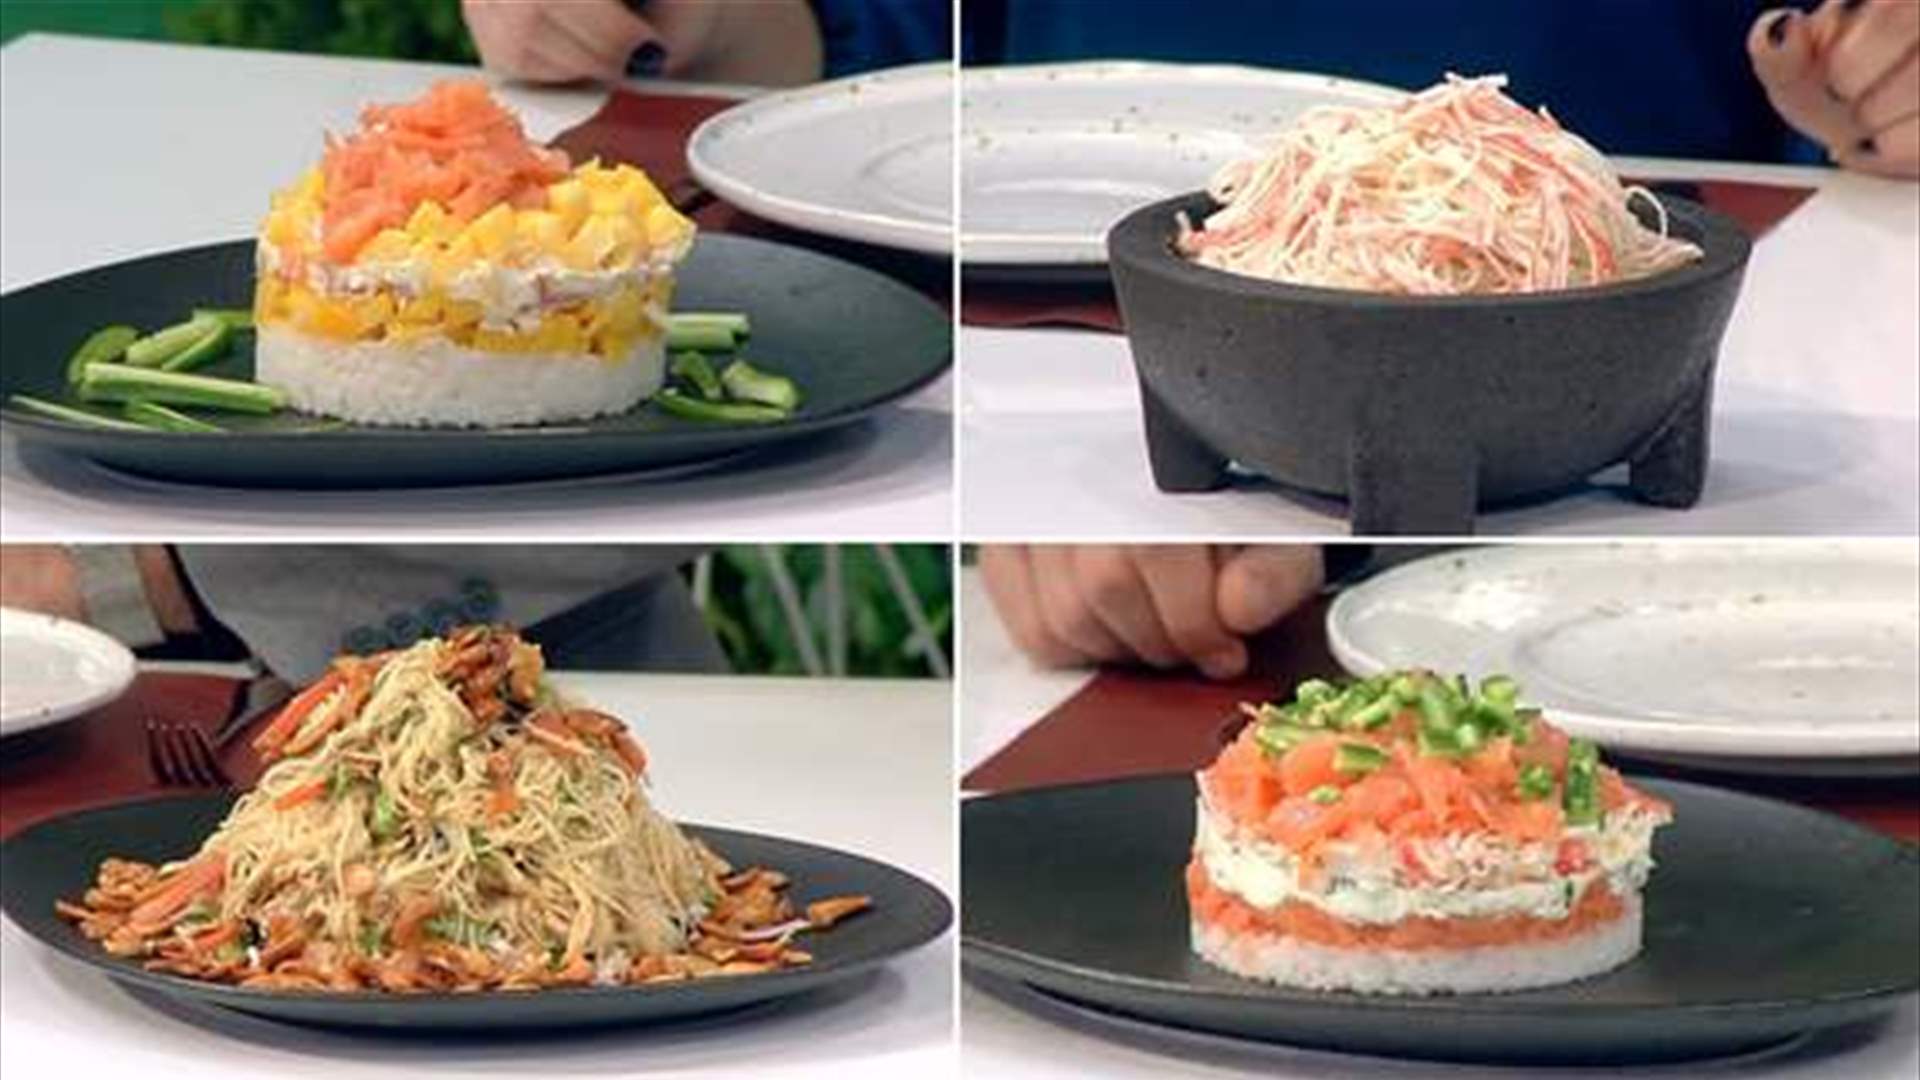  سلطة الكراب مع النودلز وكعكة السوشي بالأرز... وصفتان لذيذتان وهذه طريقة التحضير (فيديو)